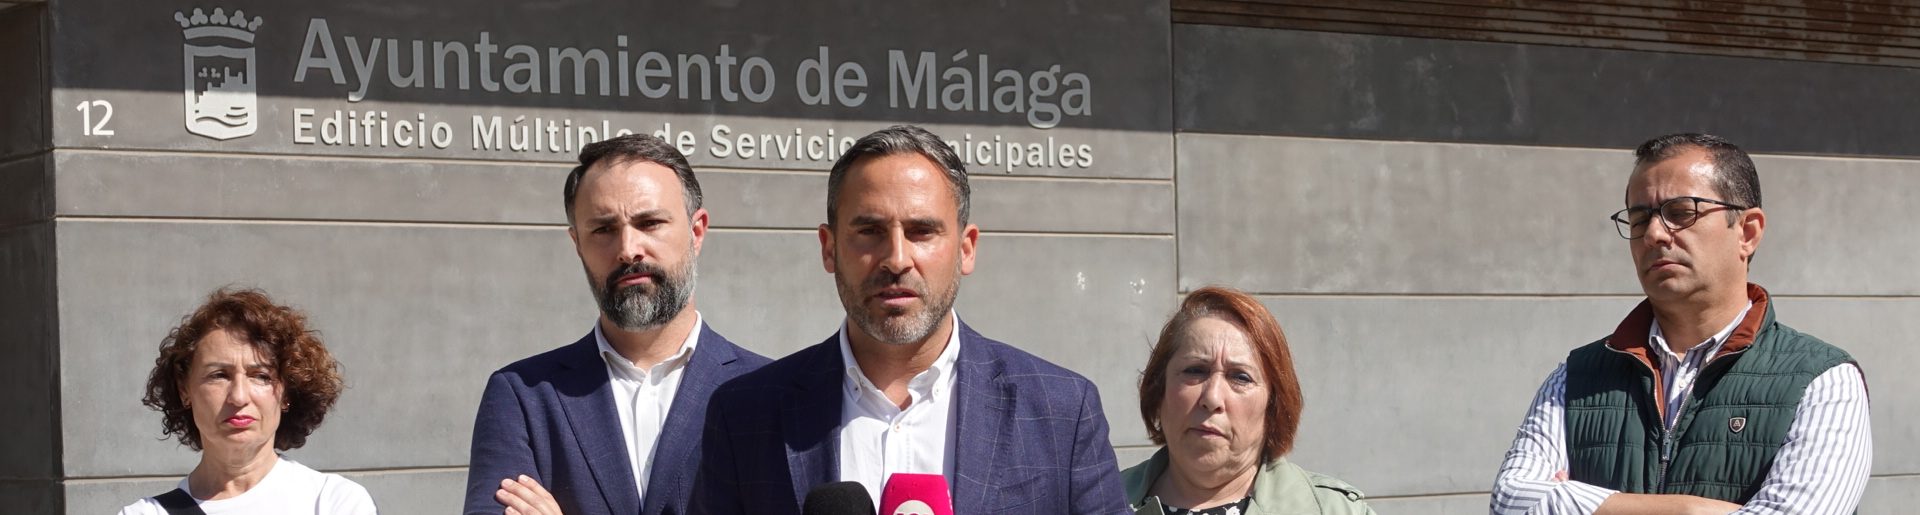 El PSOE pide una auditoría exhaustiva sobre las irregularidades en Urbanismo y el cese del gerente